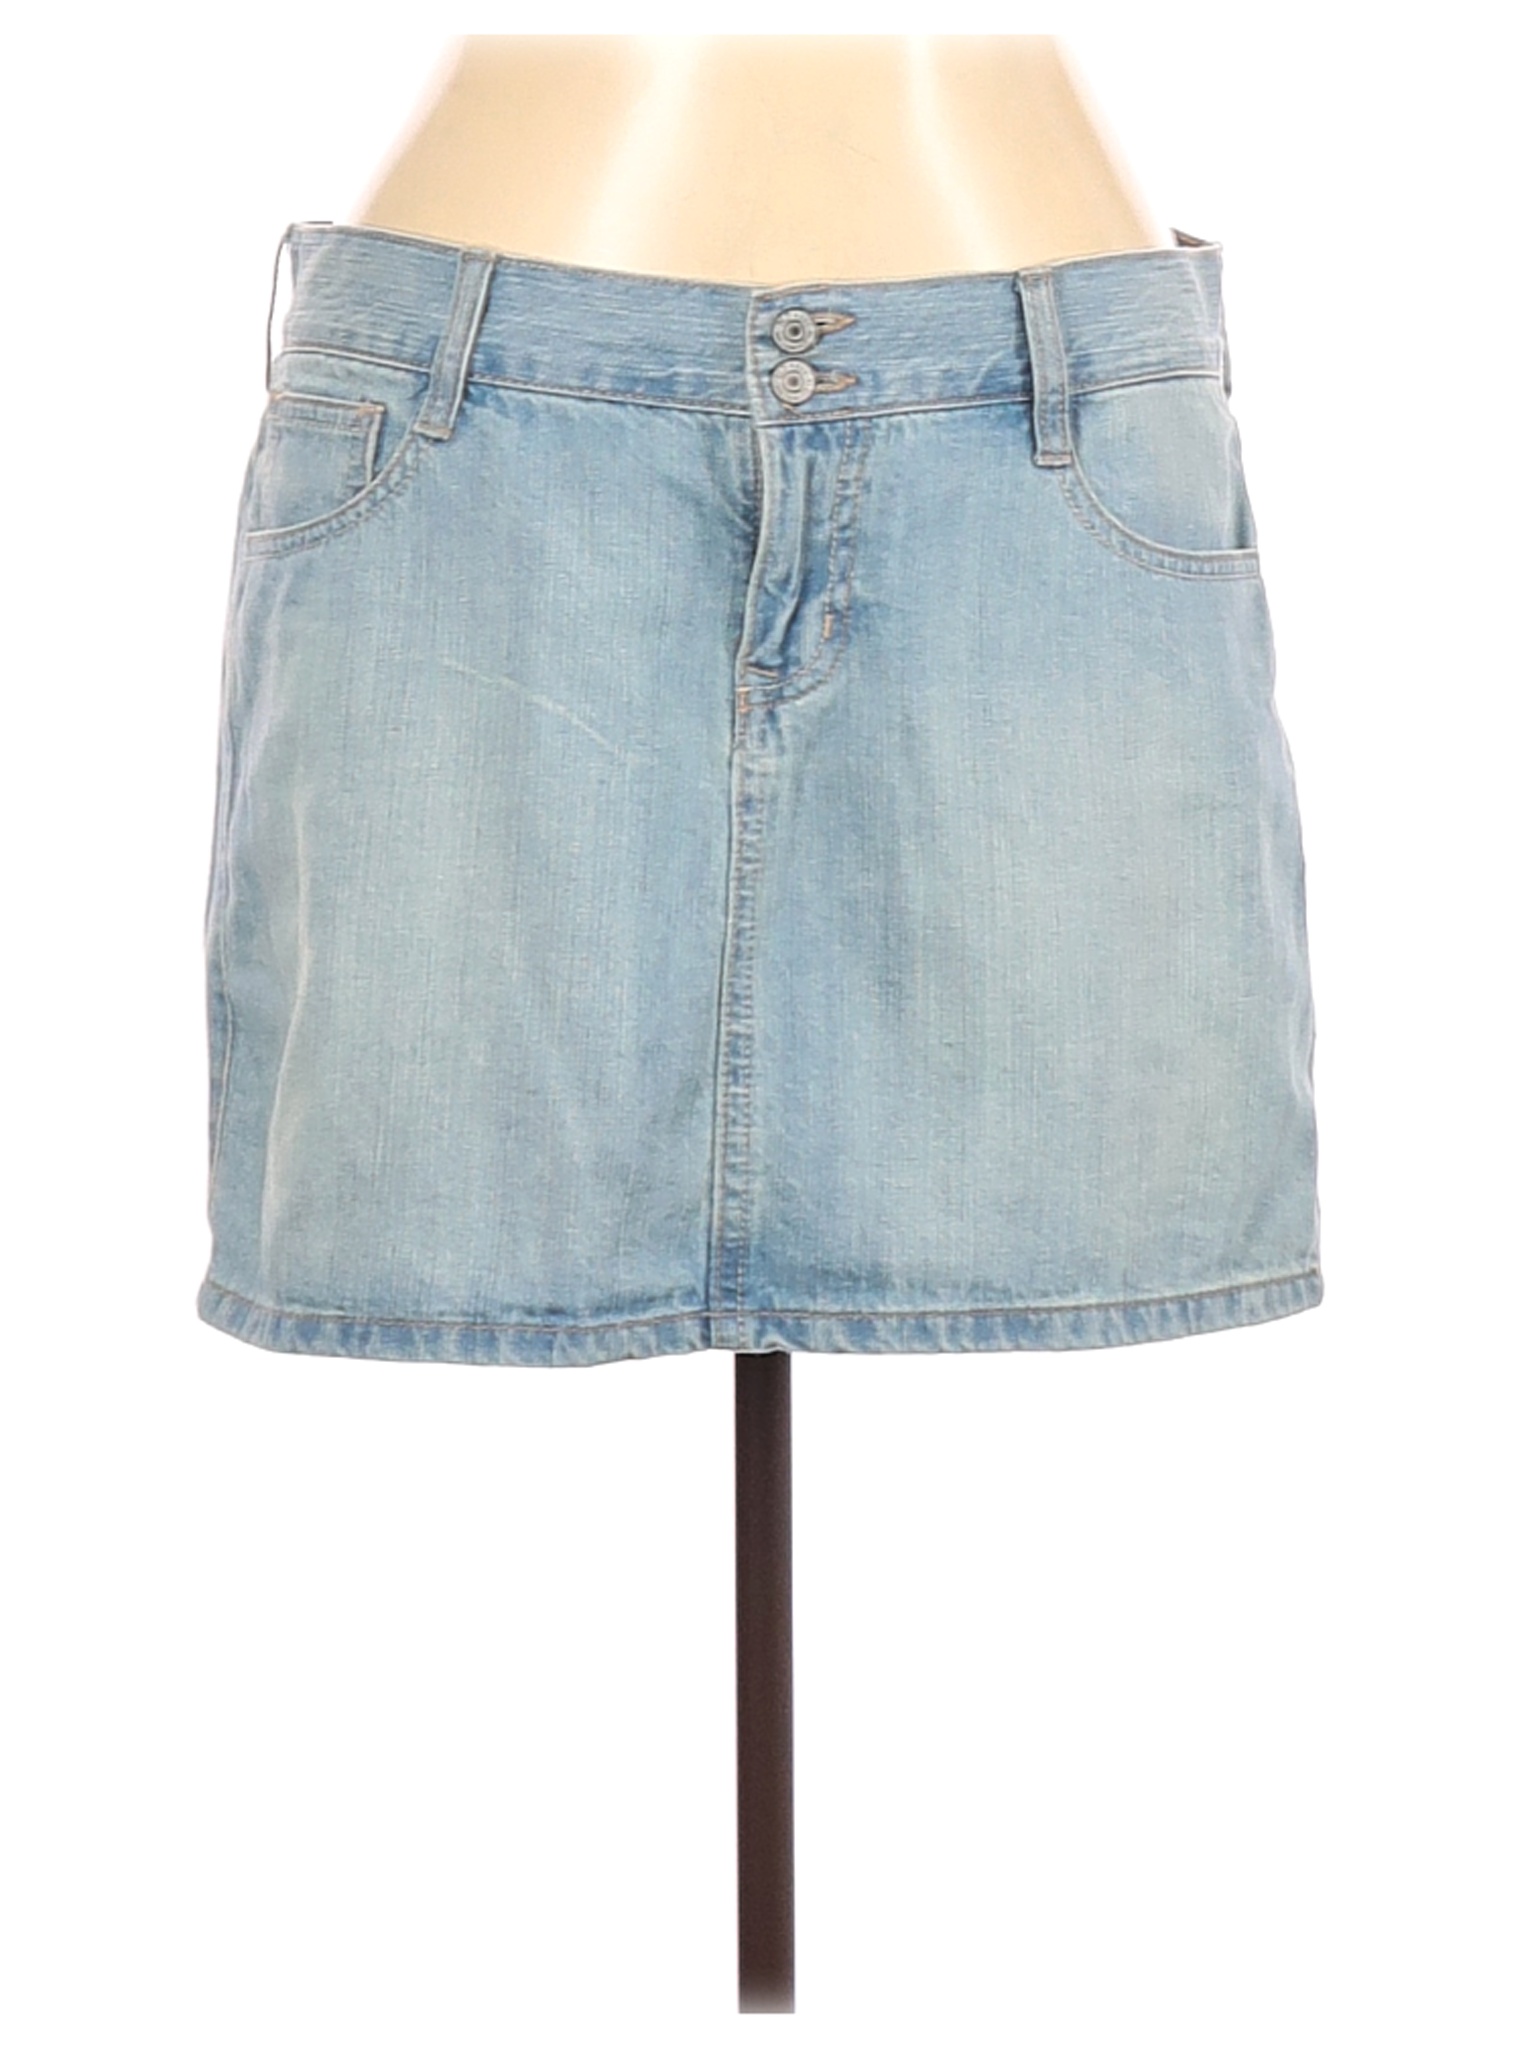 Old Navy Women Blue Denim Skirt 10 | eBay